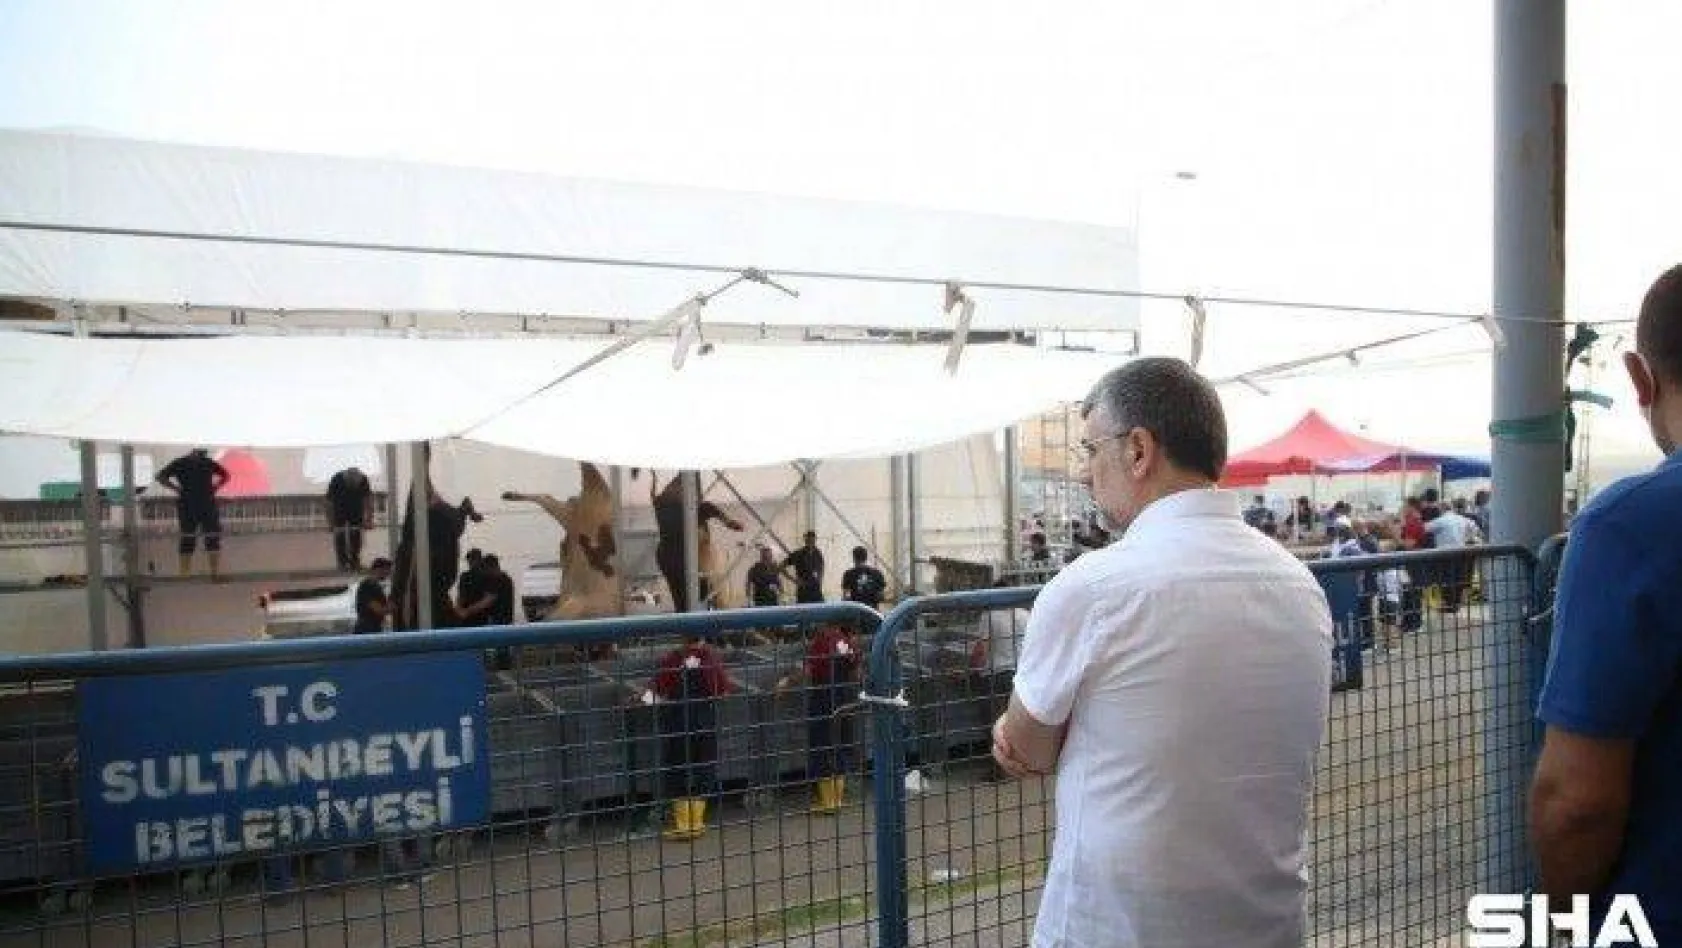 Sultanbeyli'de koronavirüs önlemleri alınarak kurbanlar kesildi